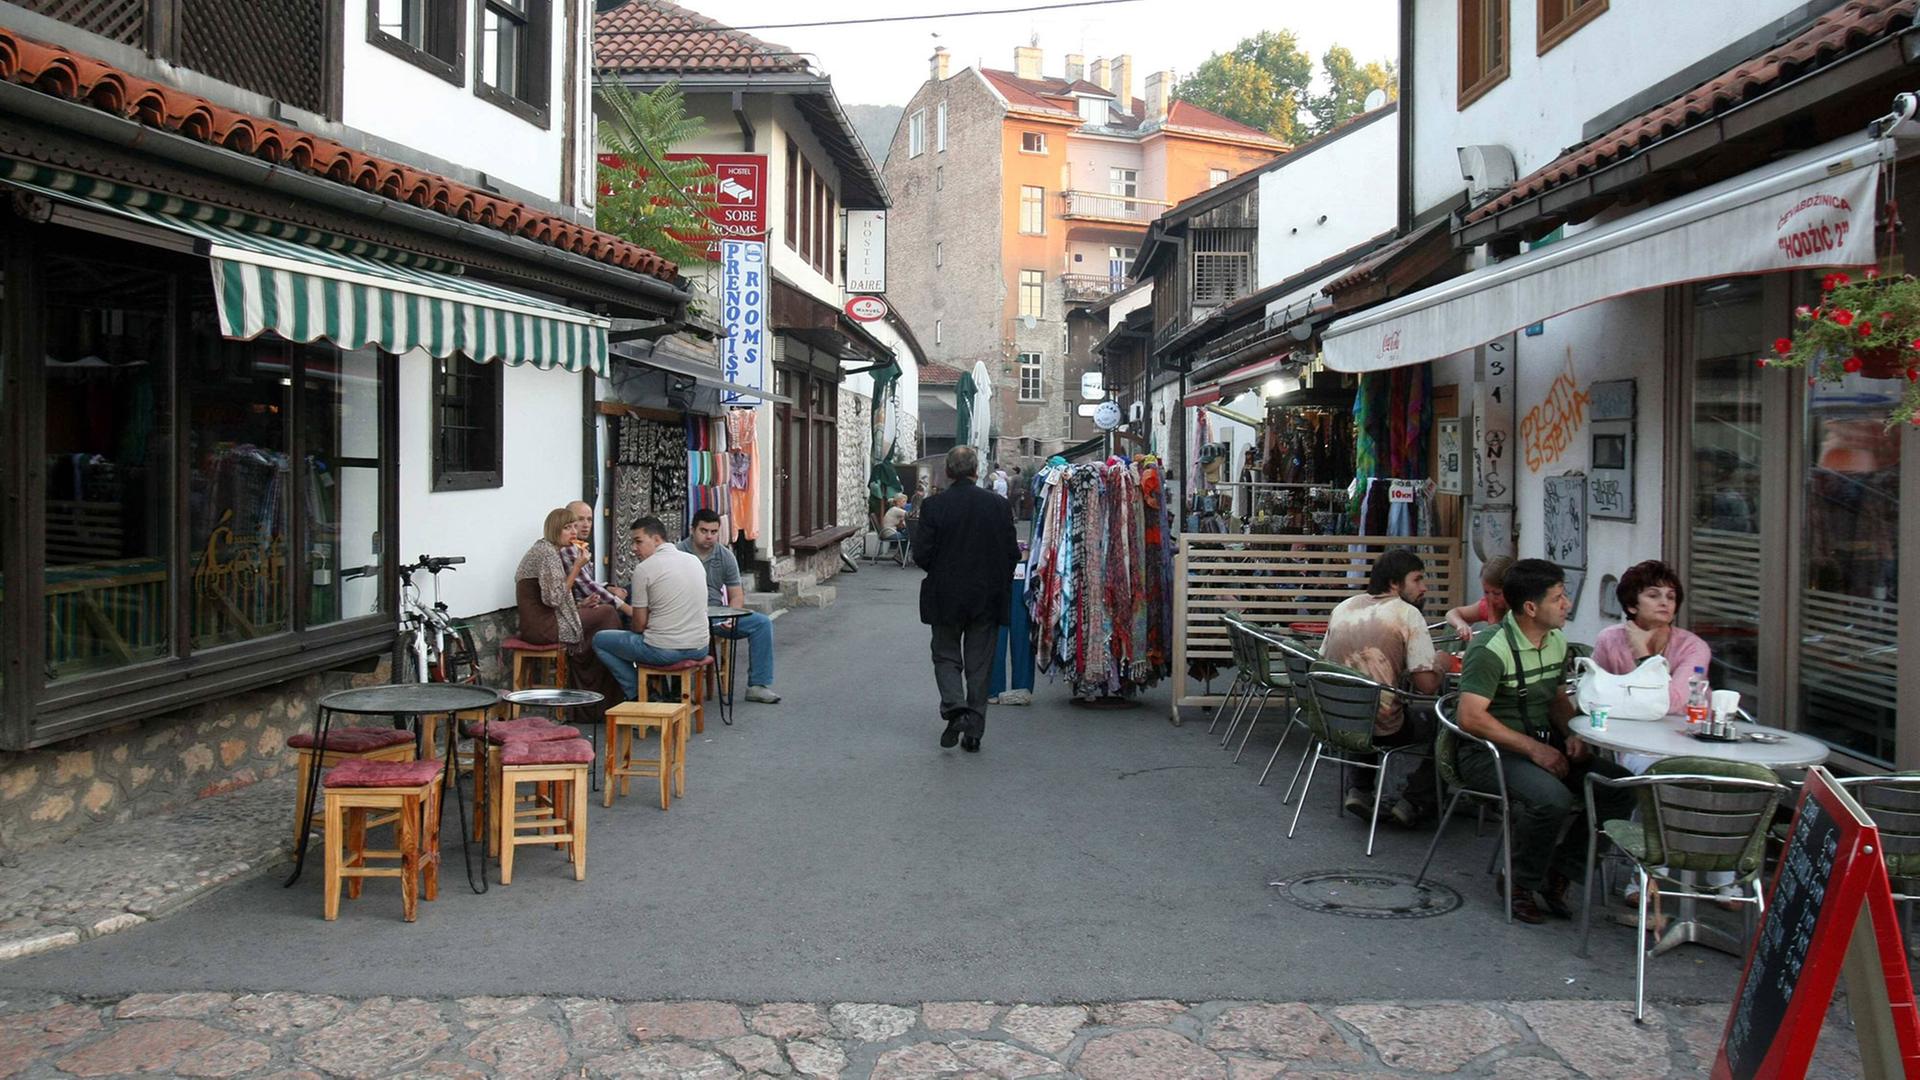 Blick in eine Altstadtgasse von Sarajevo, der Hauptstadt von Bosnien und Herzegowina